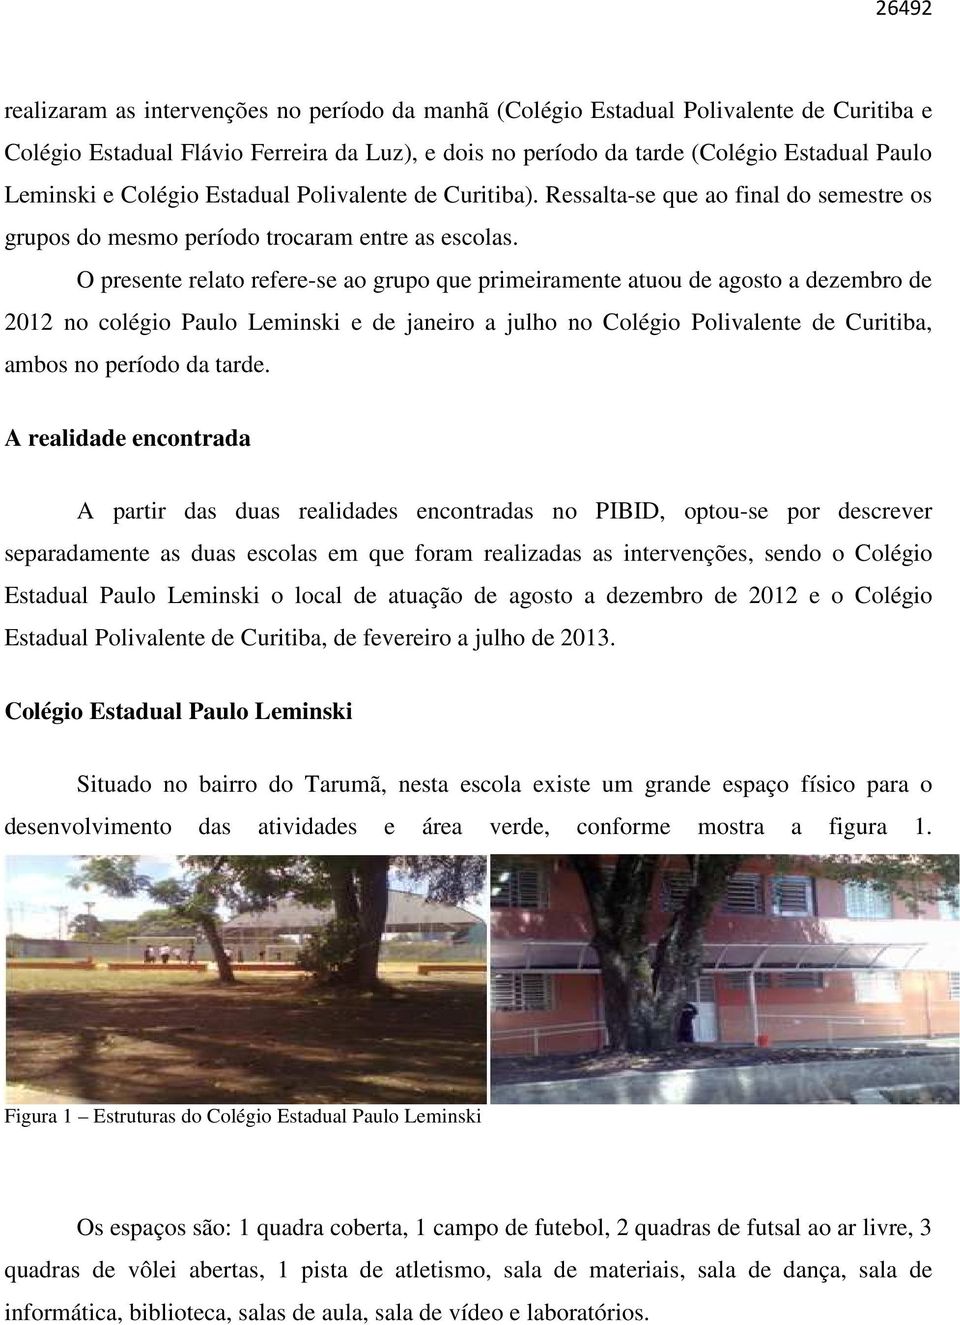 O presente relato refere-se ao grupo que primeiramente atuou de agosto a dezembro de 2012 no colégio Paulo Leminski e de janeiro a julho no Colégio Polivalente de Curitiba, ambos no período da tarde.